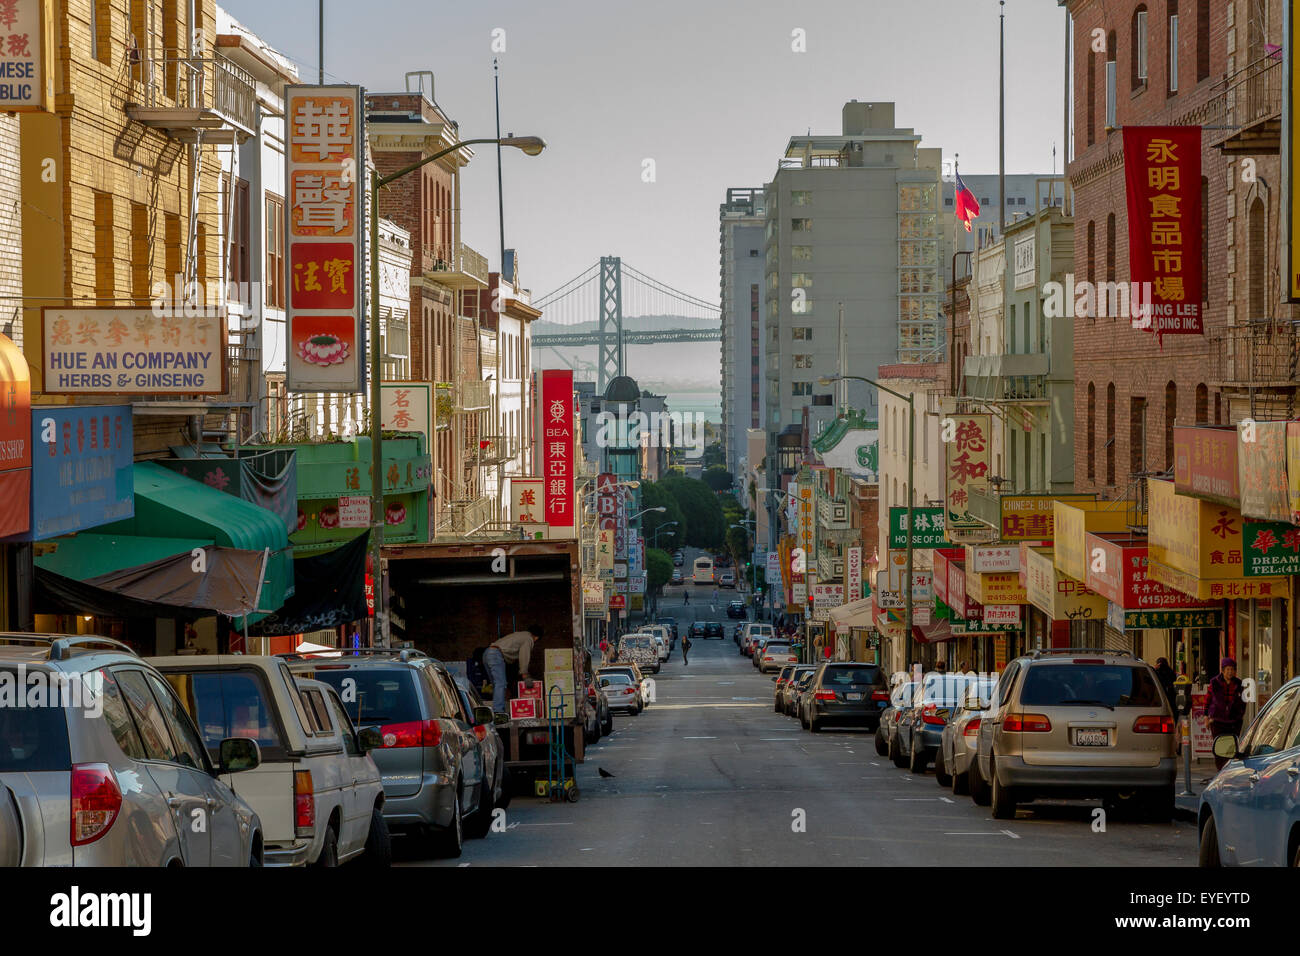 Une vue le long de Washington St dans le quartier de Chinatown de San Francisco, avec le Oakland Bay Bridge au loin, San Francisco Californie Banque D'Images